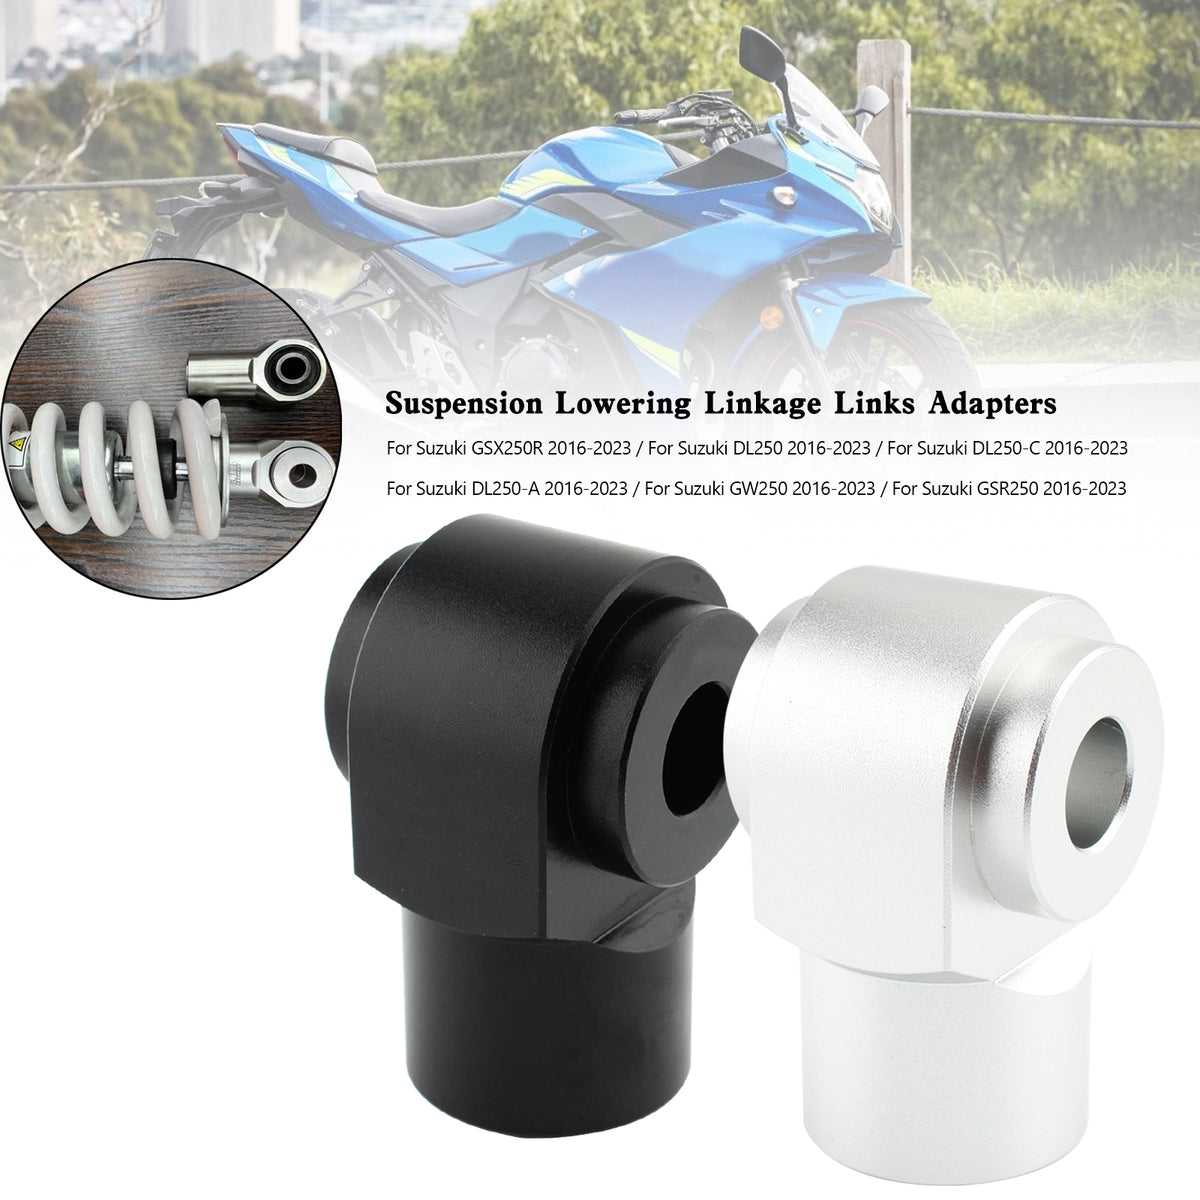 Suspension Lowering Linkage Links Kit For Suzuki GSR250R DL250 GW250 GSX250R